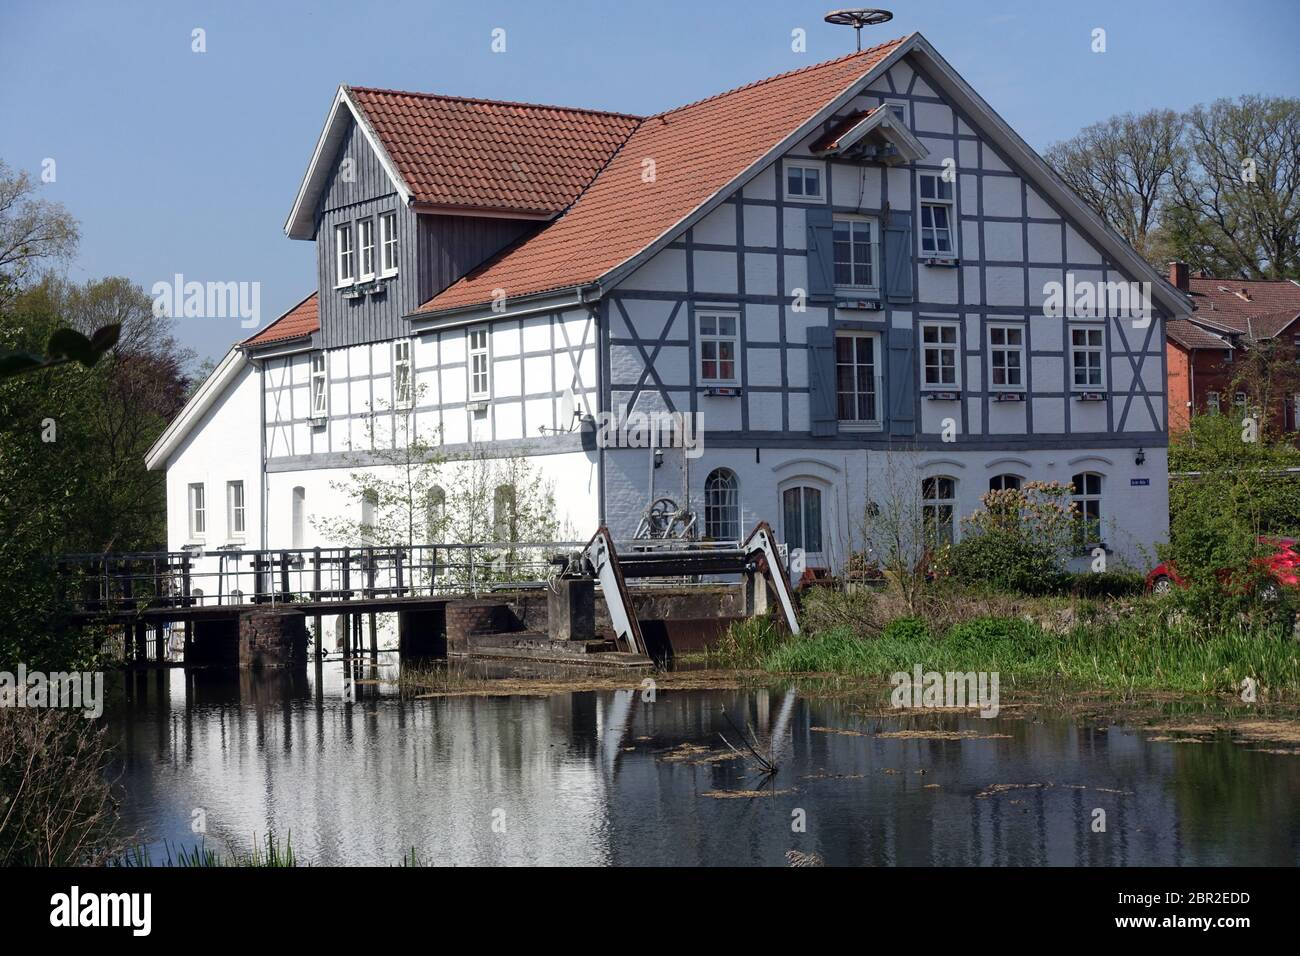 historische Wassermühle Oldenstadt, Hansestadt Uelzen, Niedersachsen, Deutschland Stock Photo